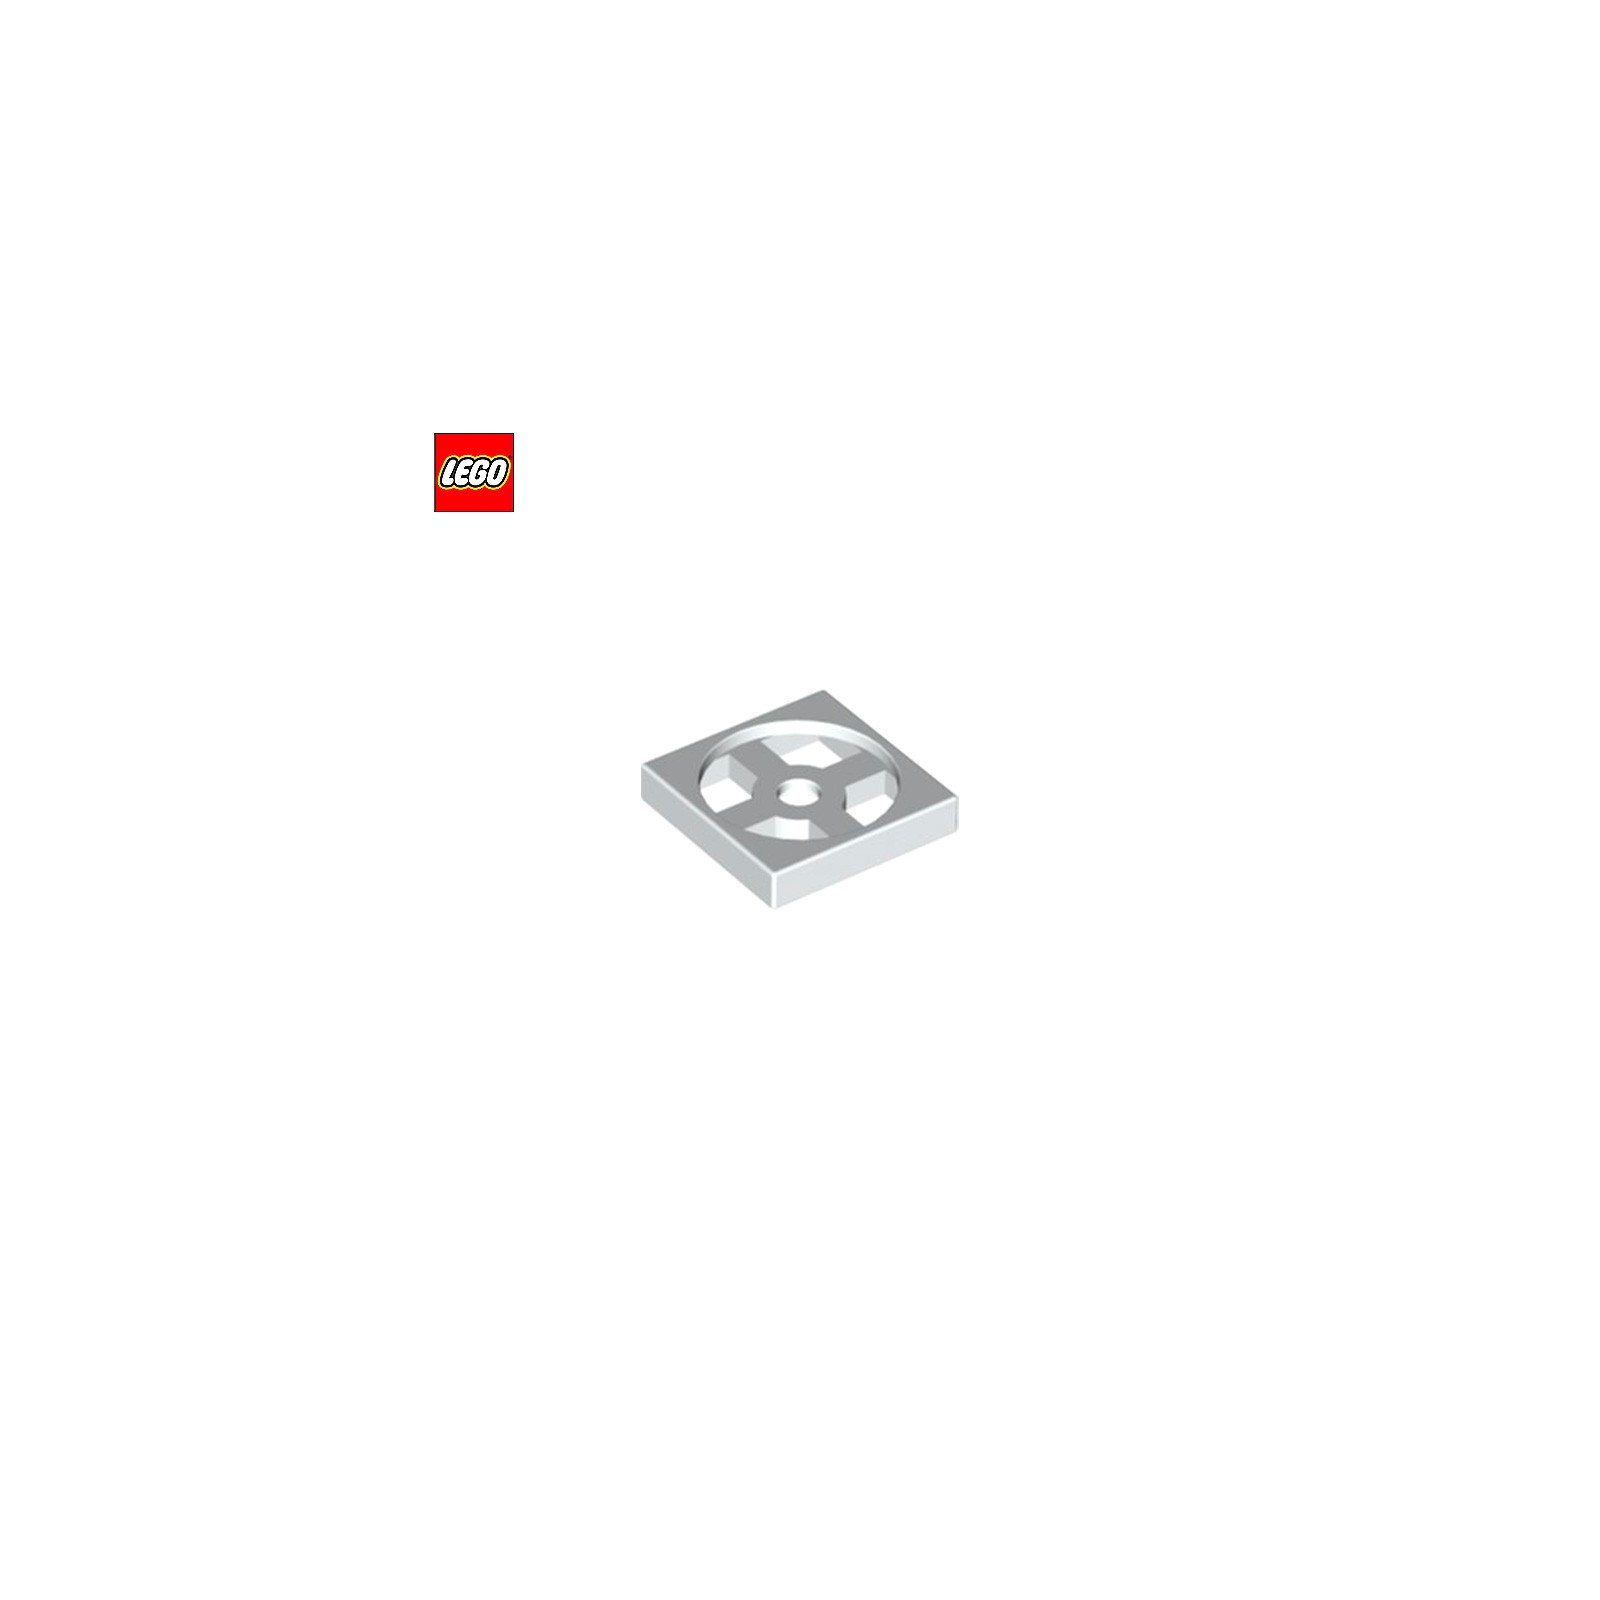 Plaque tournante 2x2 (base) - Pièce LEGO® 3680